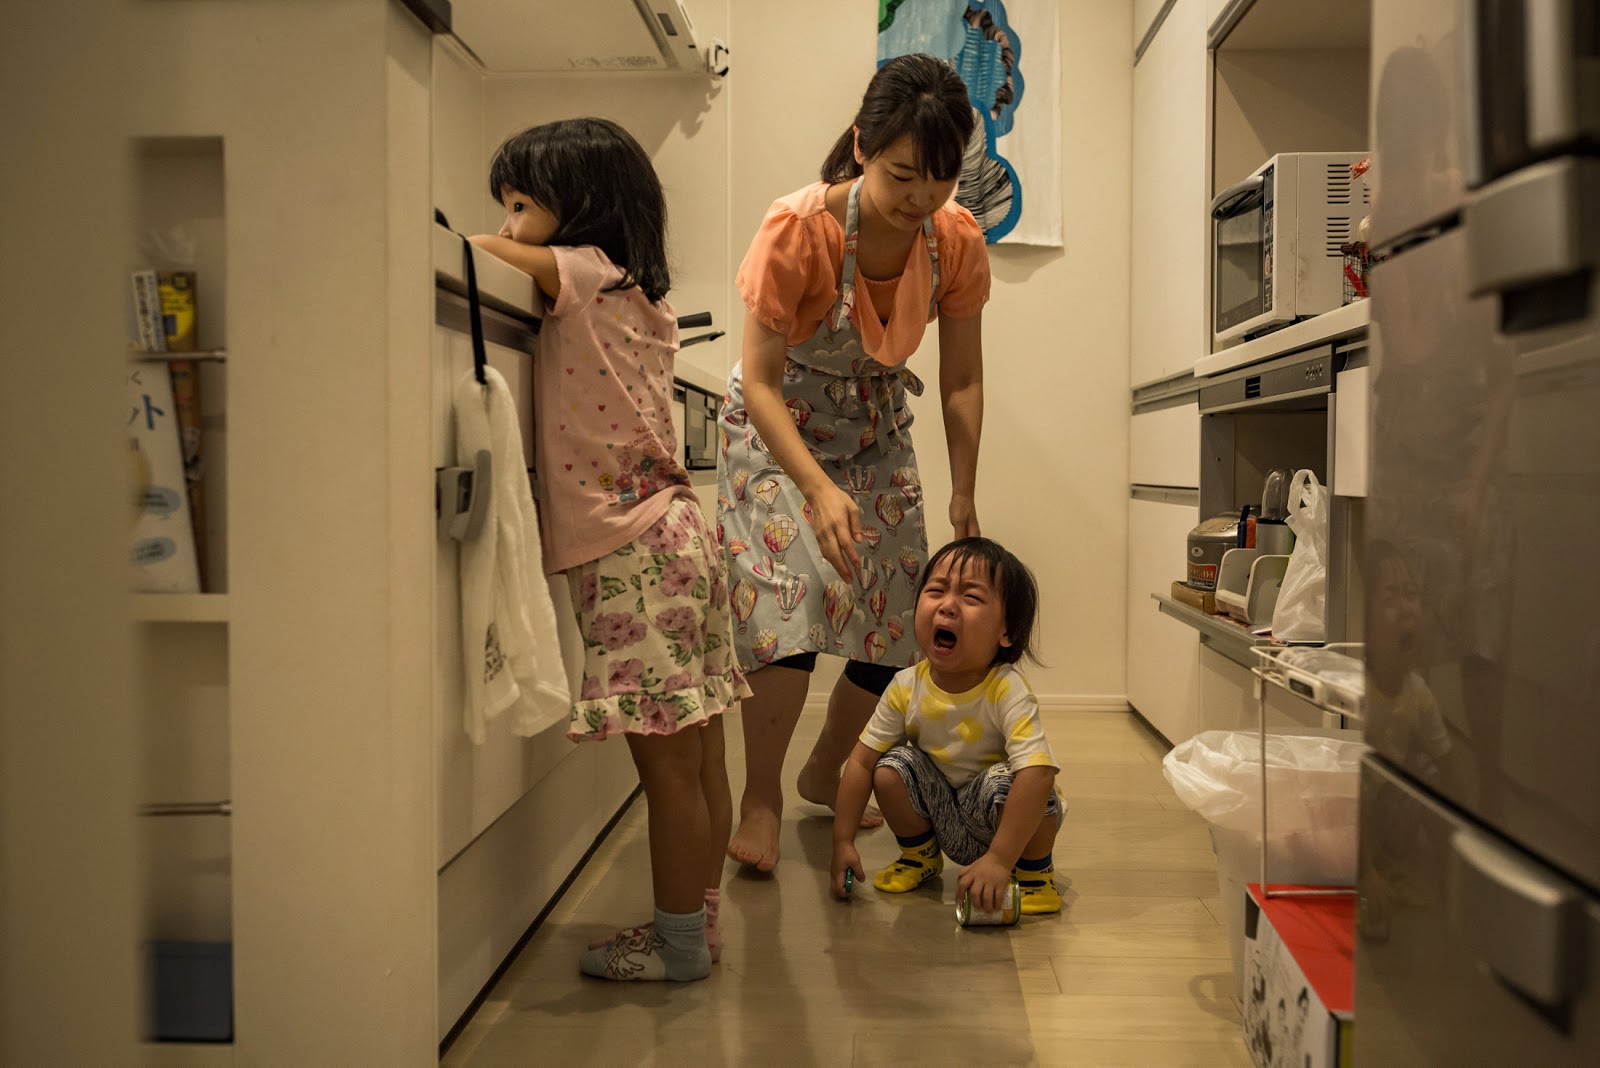 Các chi phí và khoản hỗ trợ cần biết khi sinh đẻ và chăm sóc con tại Nhật   MATCHA  tạp chí Web dành cho khách du lịch nước ngoài khi